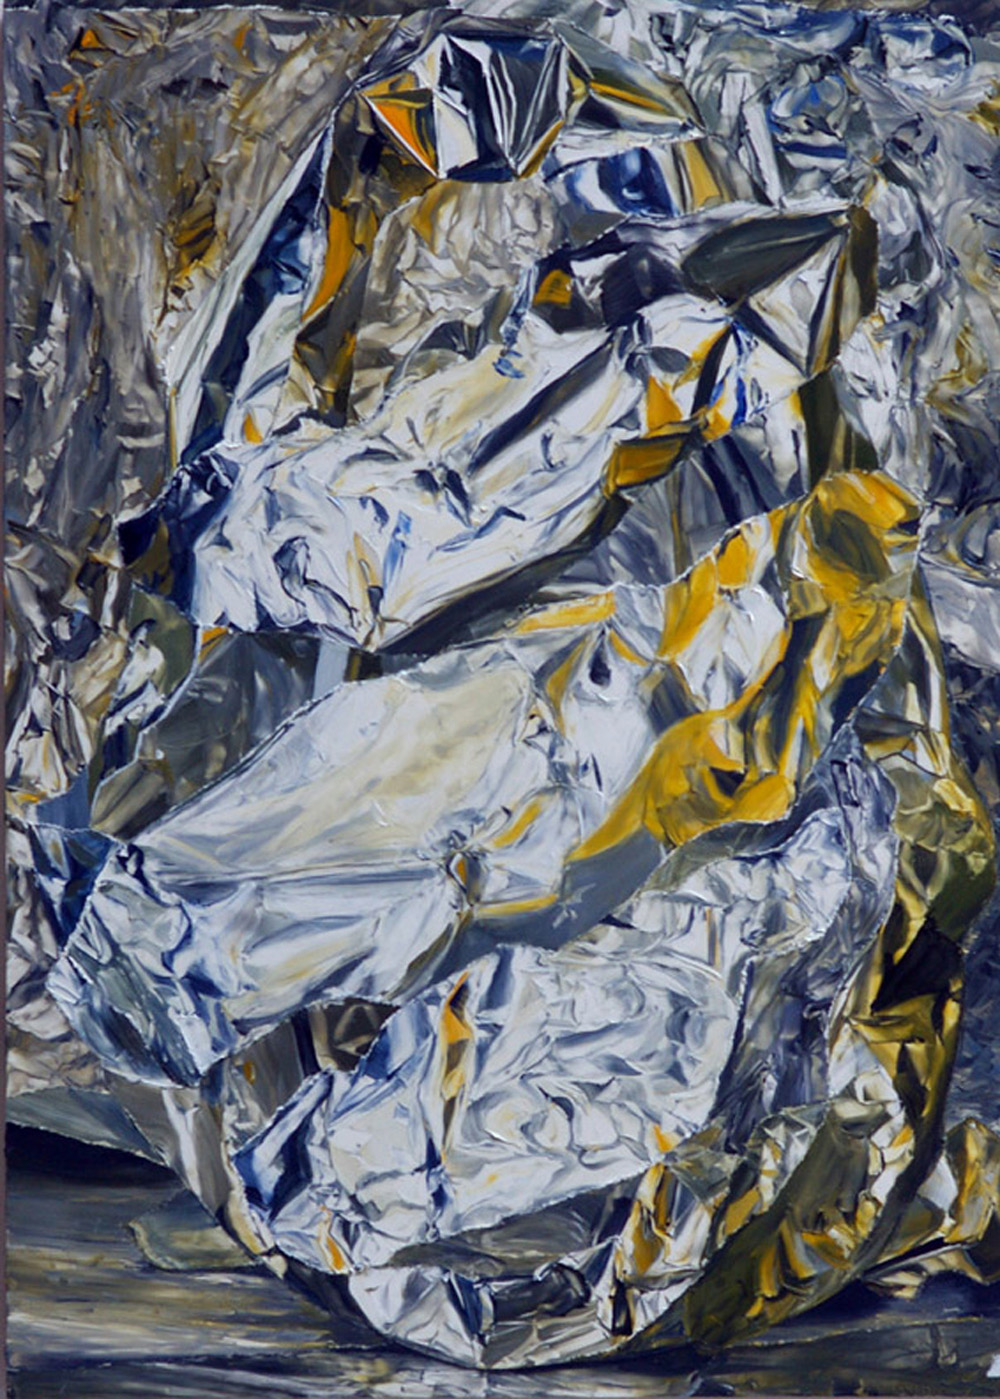 Untitled, 2010
oil on board
34.3 x 24.5 cms
13 1/2 x 9 5/8 ins. William Daniels